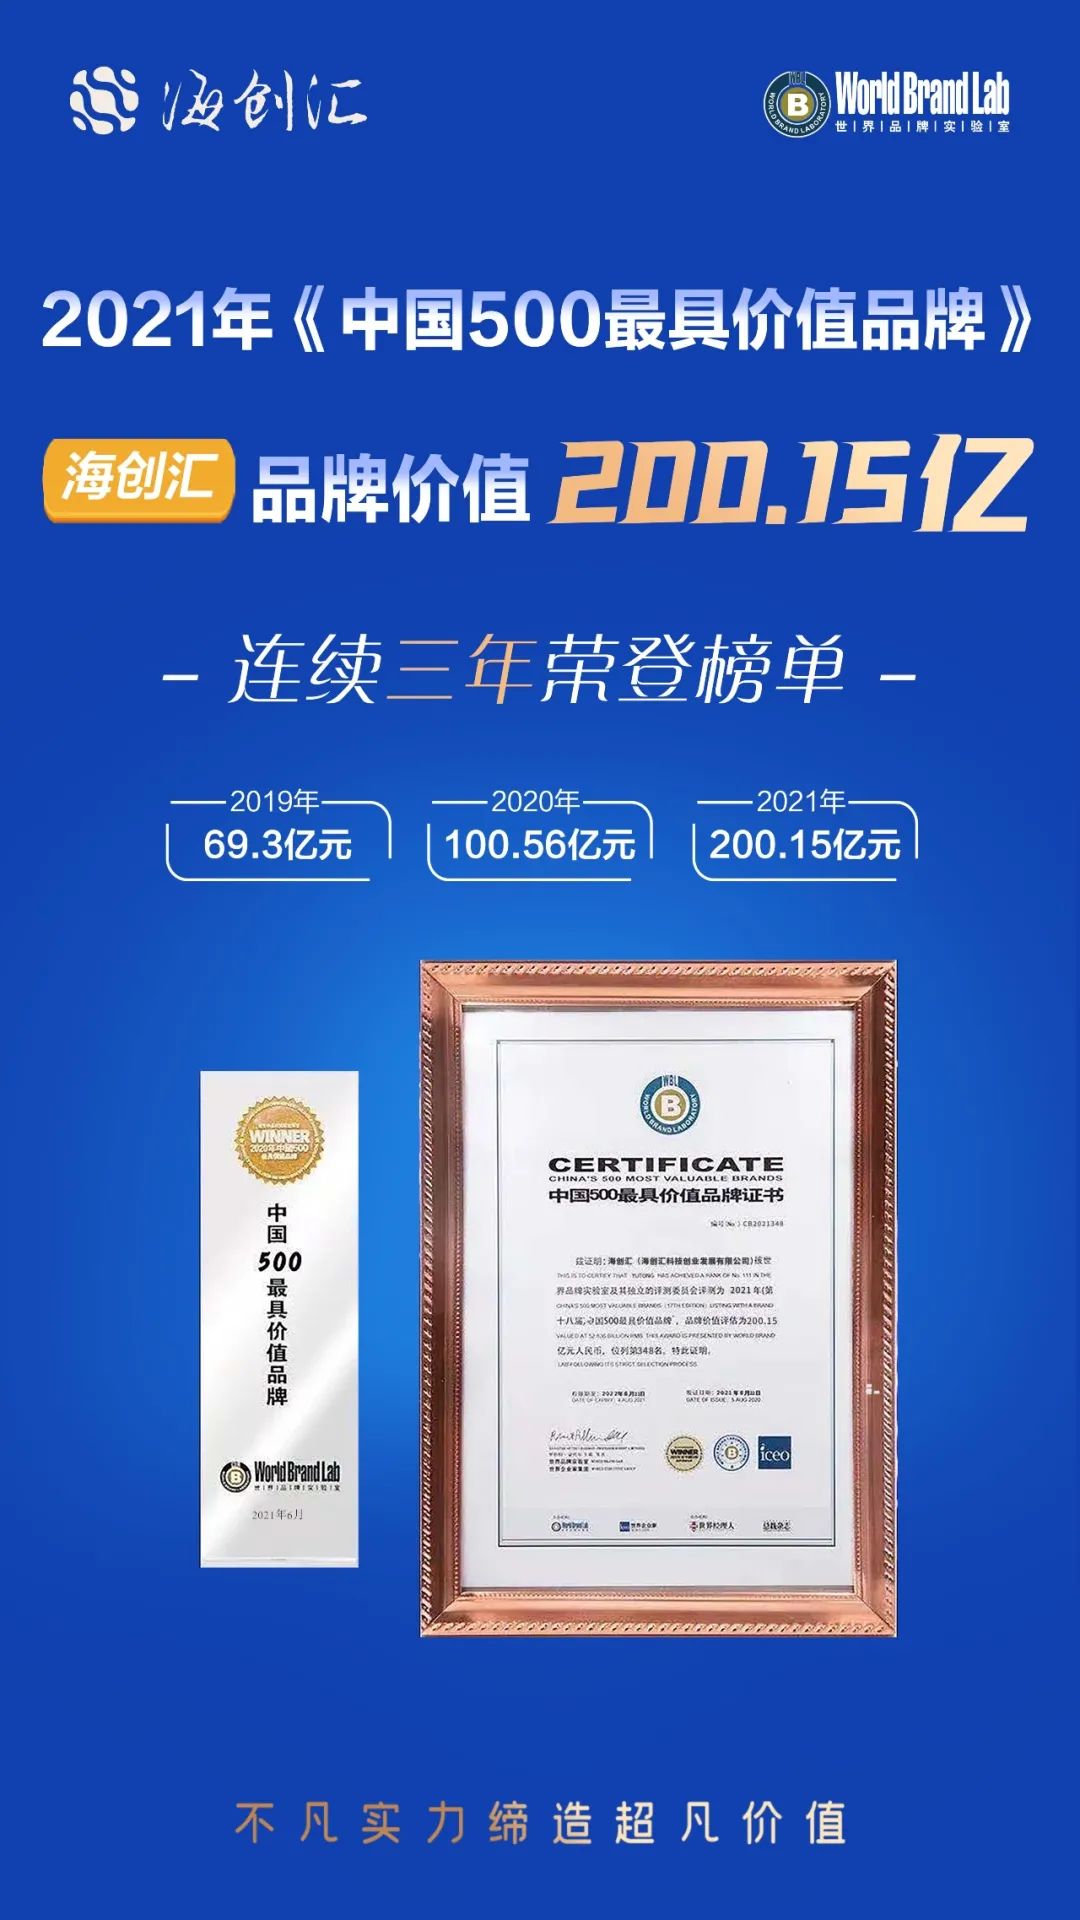 海创汇连续三年上榜“中国500最具价值品牌”，品牌价值200.15亿元